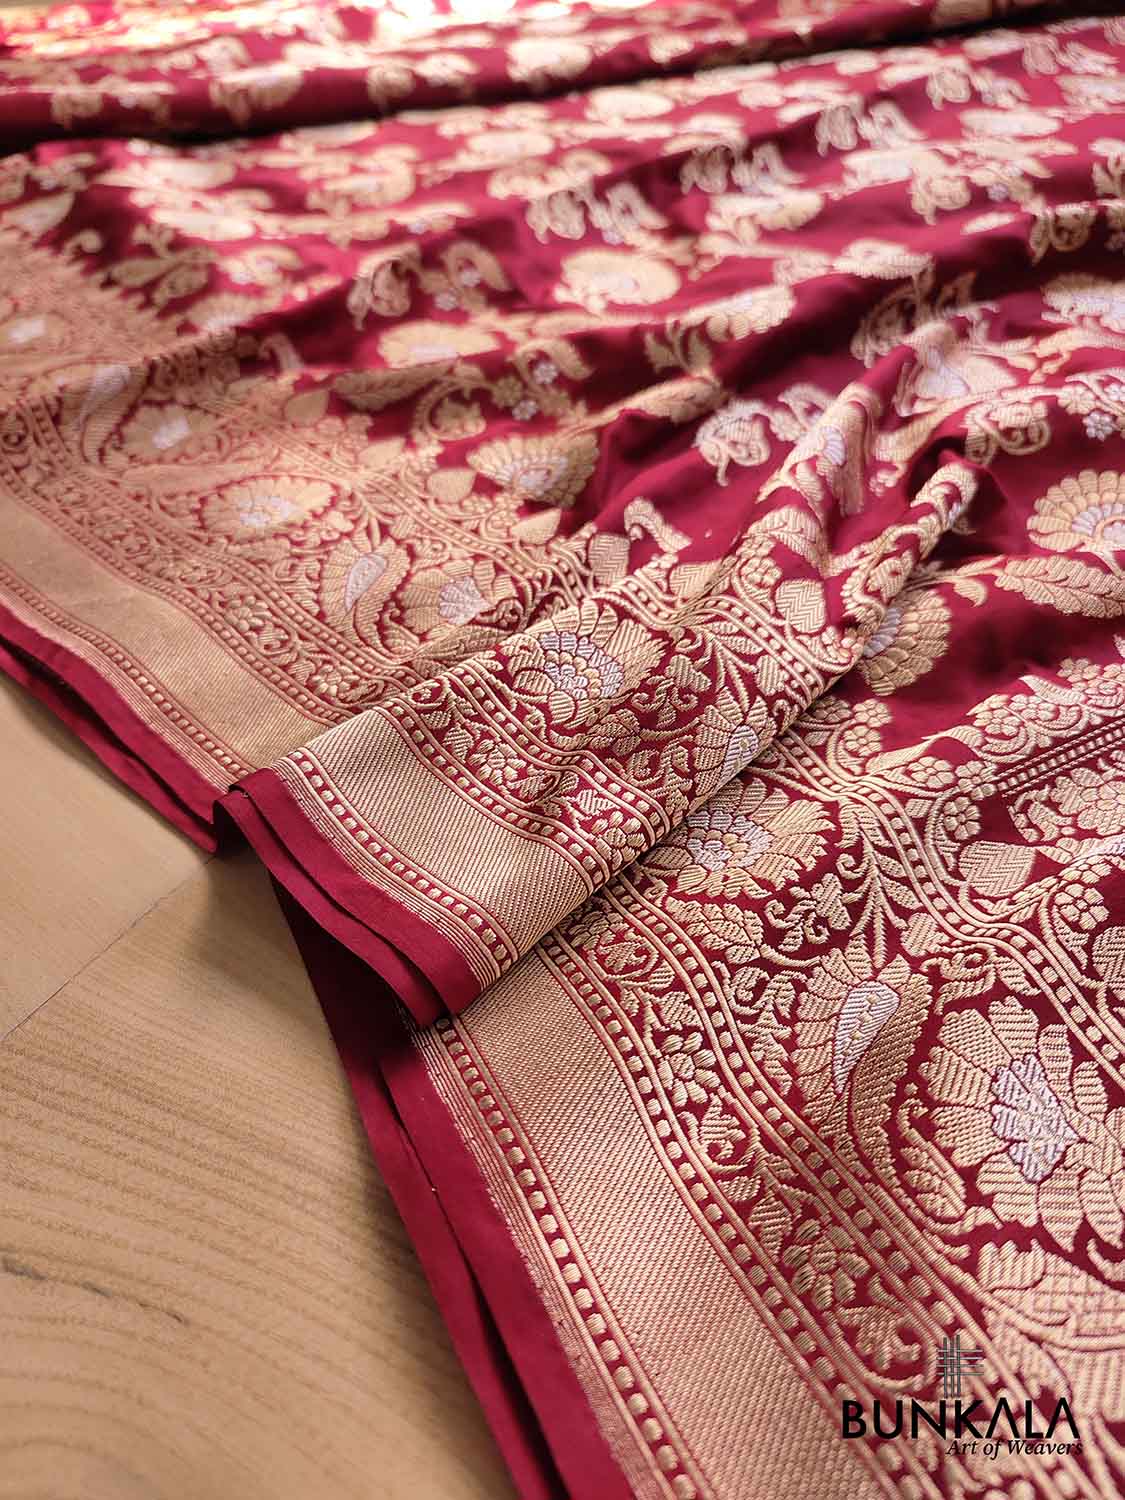 WOVEN WORK Red Soft banarasi katan silk saree, 5.5 m (separate blouse  piece) at Rs 1875 in Surat